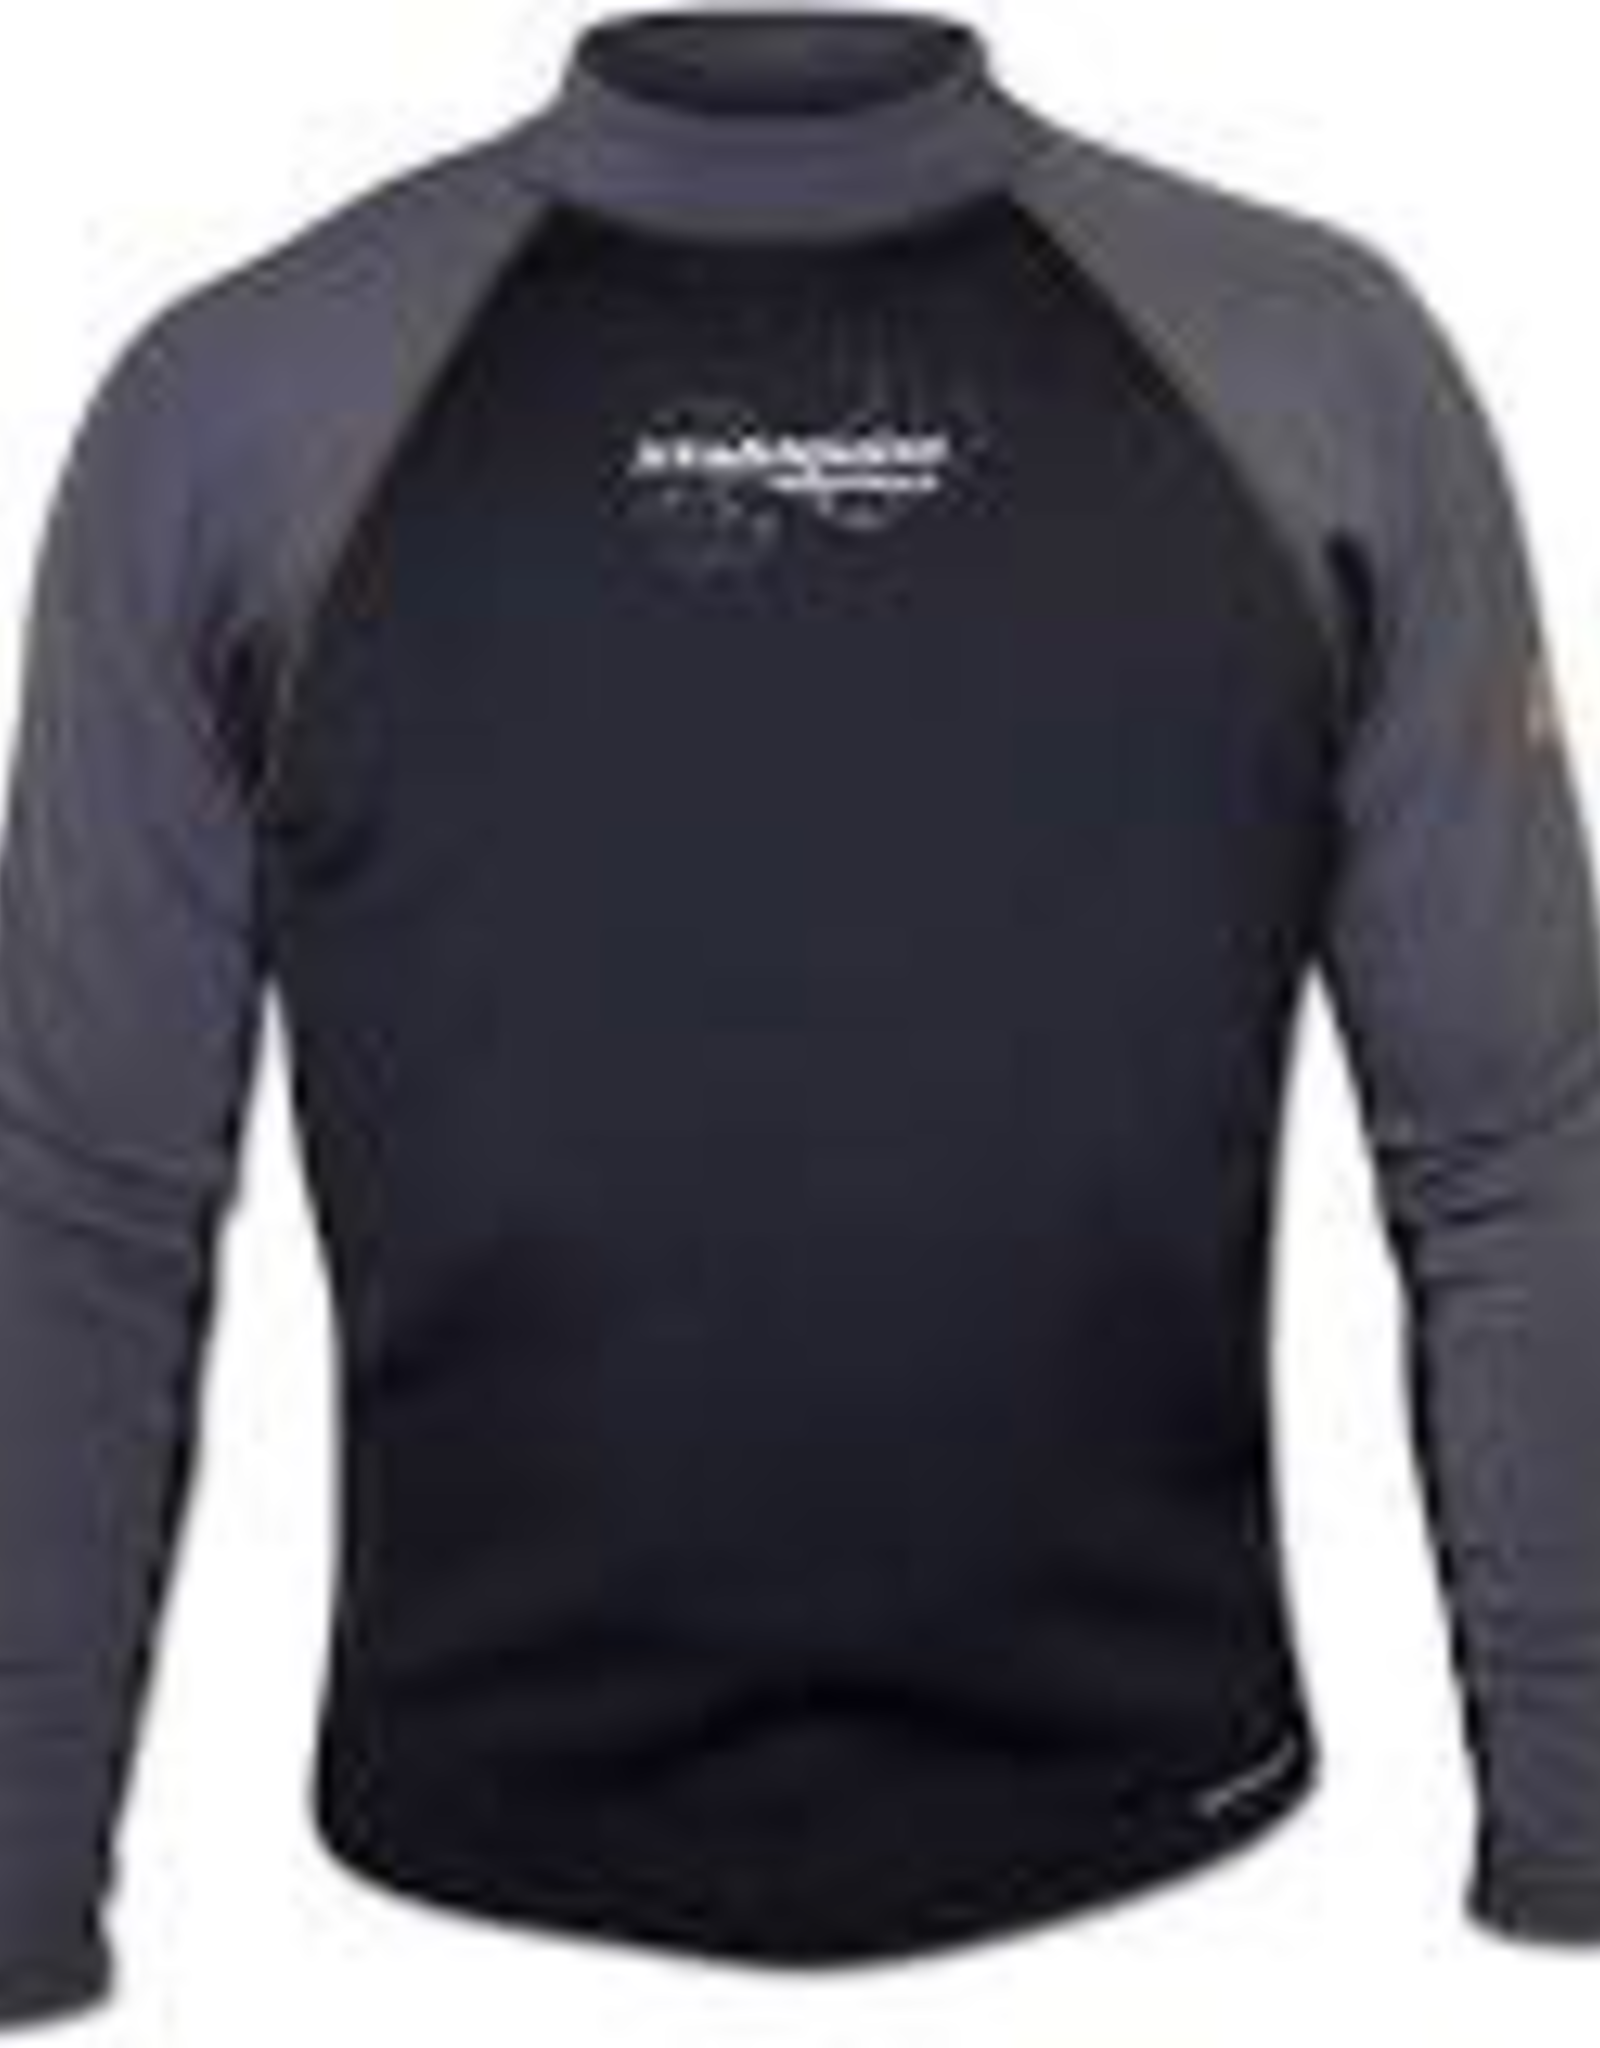 Stohlquist 1mm CoreHEATER Shirt, Men's, Black/Gray